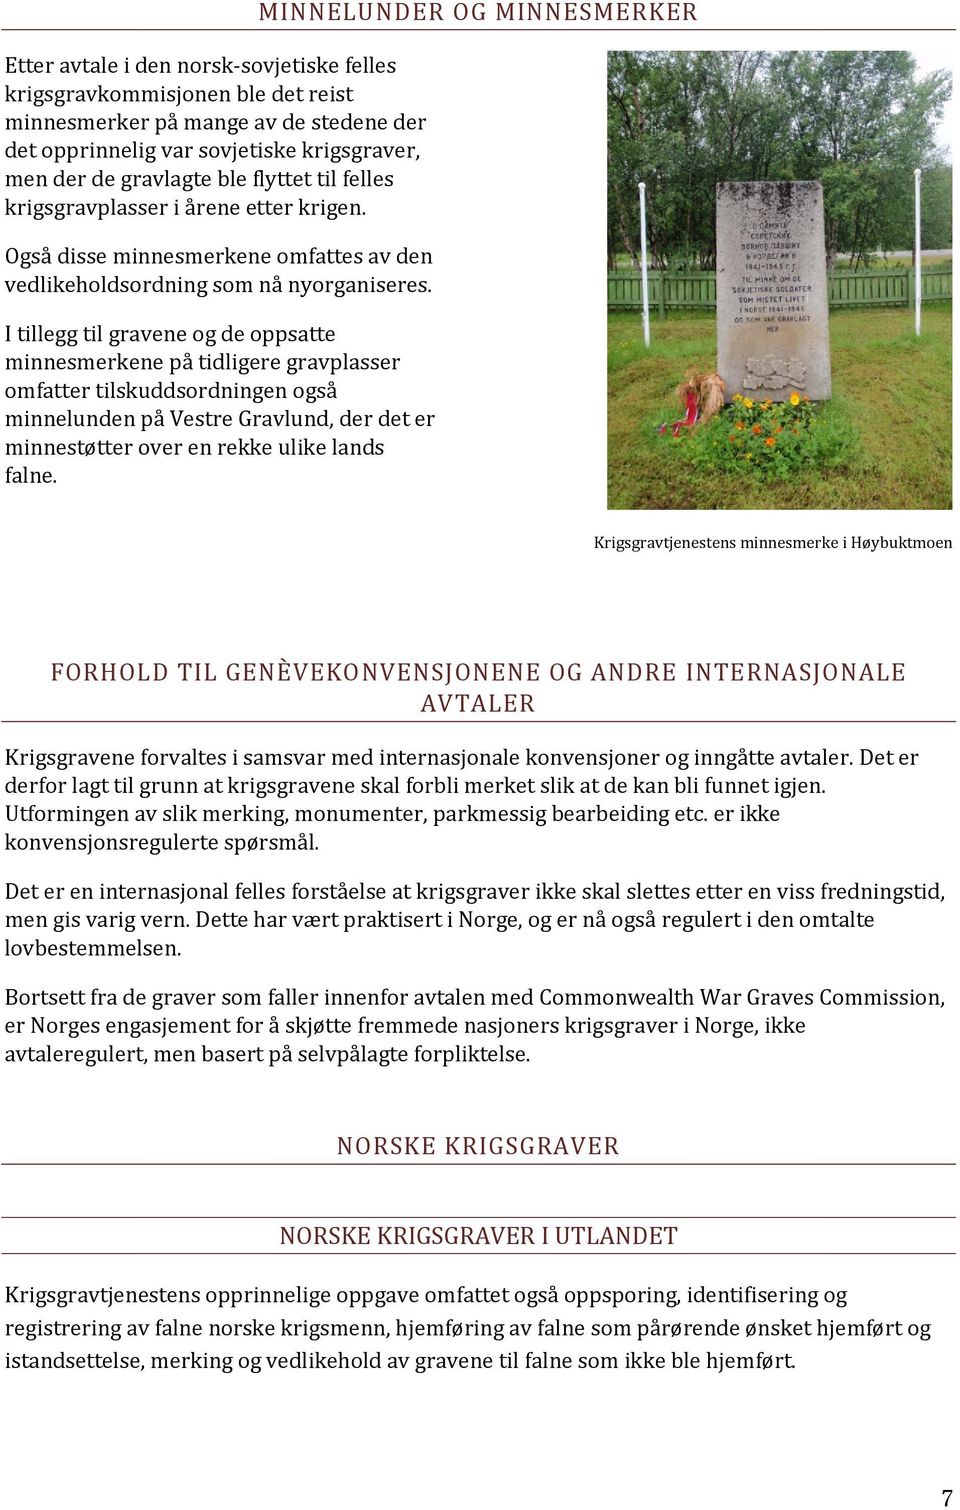 I tillegg til gravene og de oppsatte minnesmerkene på tidligere gravplasser omfatter tilskuddsordningen også minnelunden på Vestre Gravlund, der det er minnestøtter over en rekke ulike lands falne.